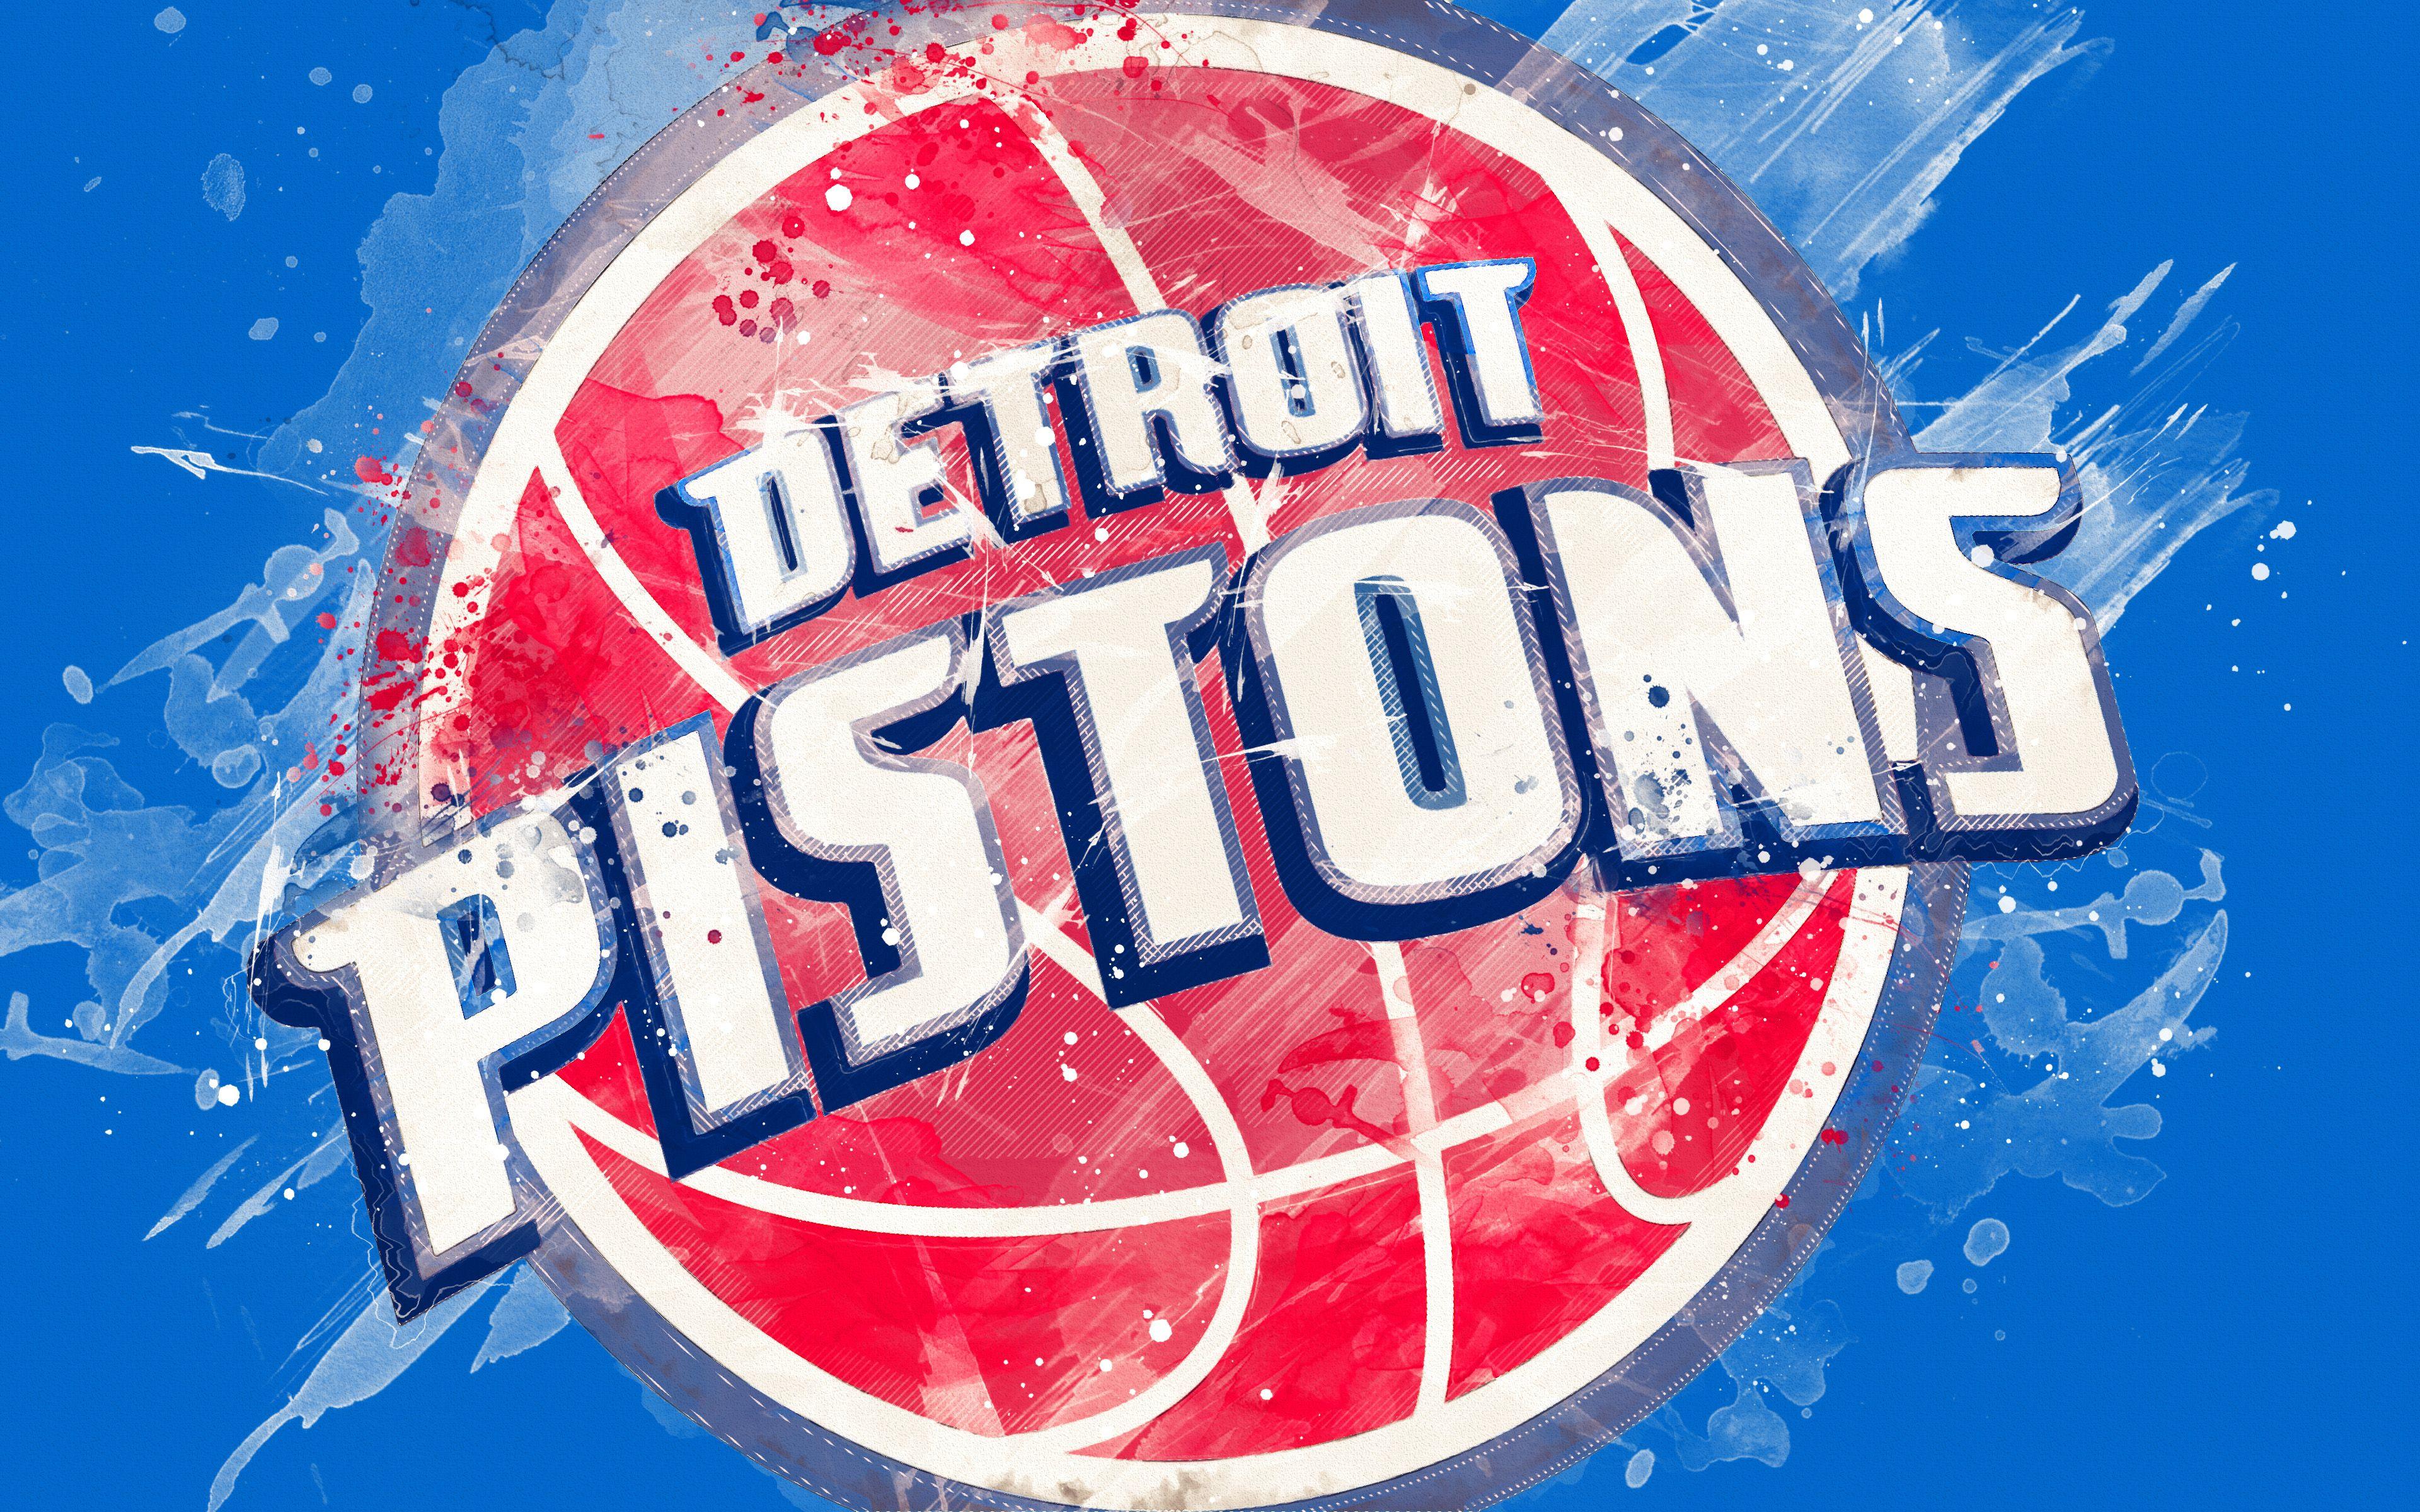 Detroit Pistons scores